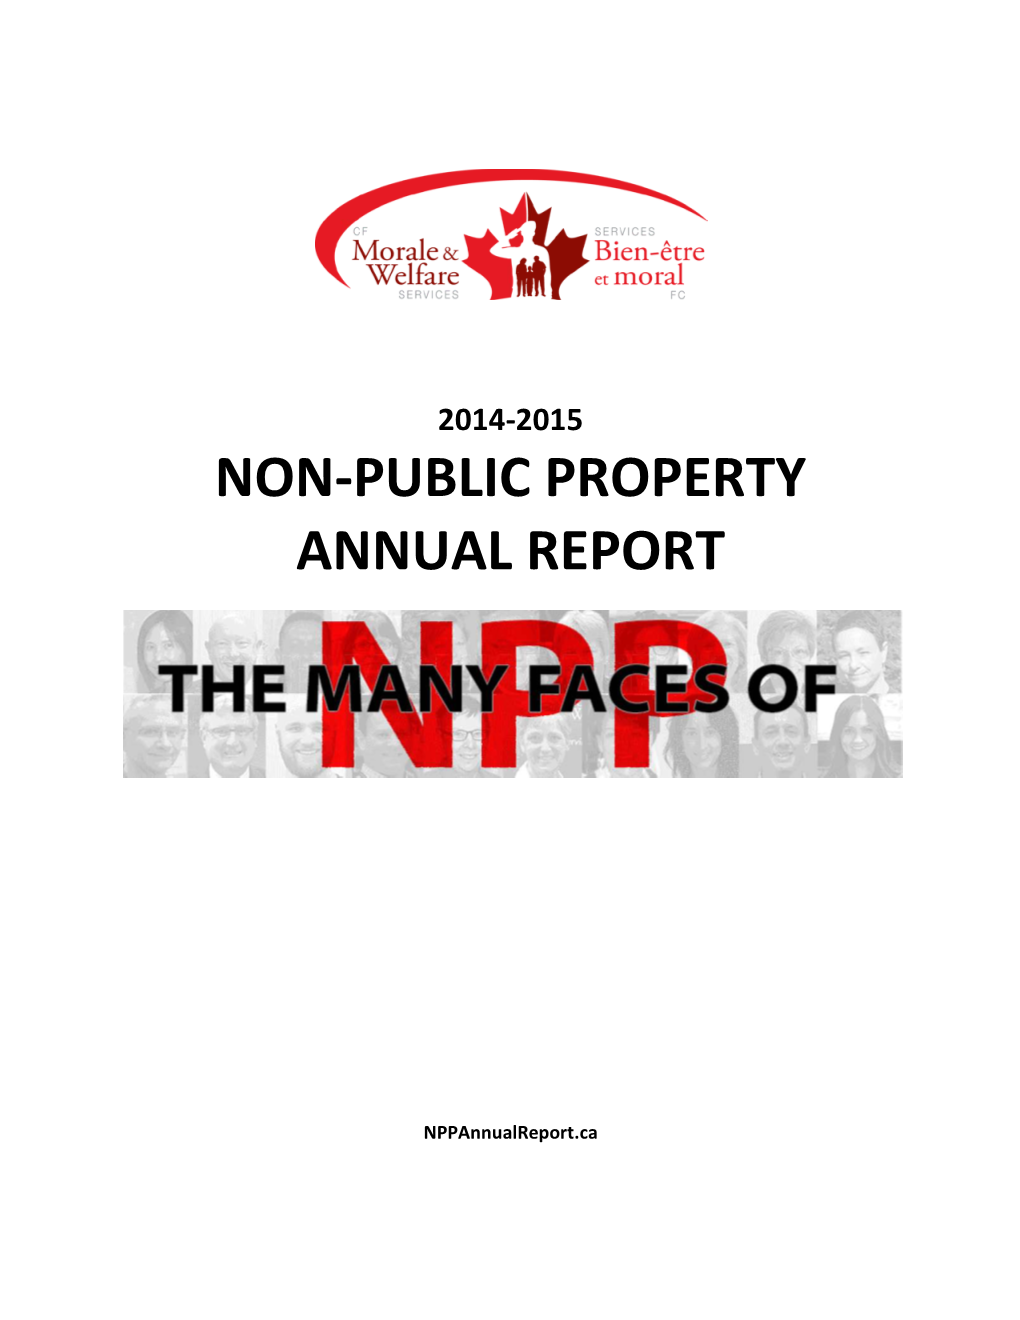 Non-Public Property Annual Report